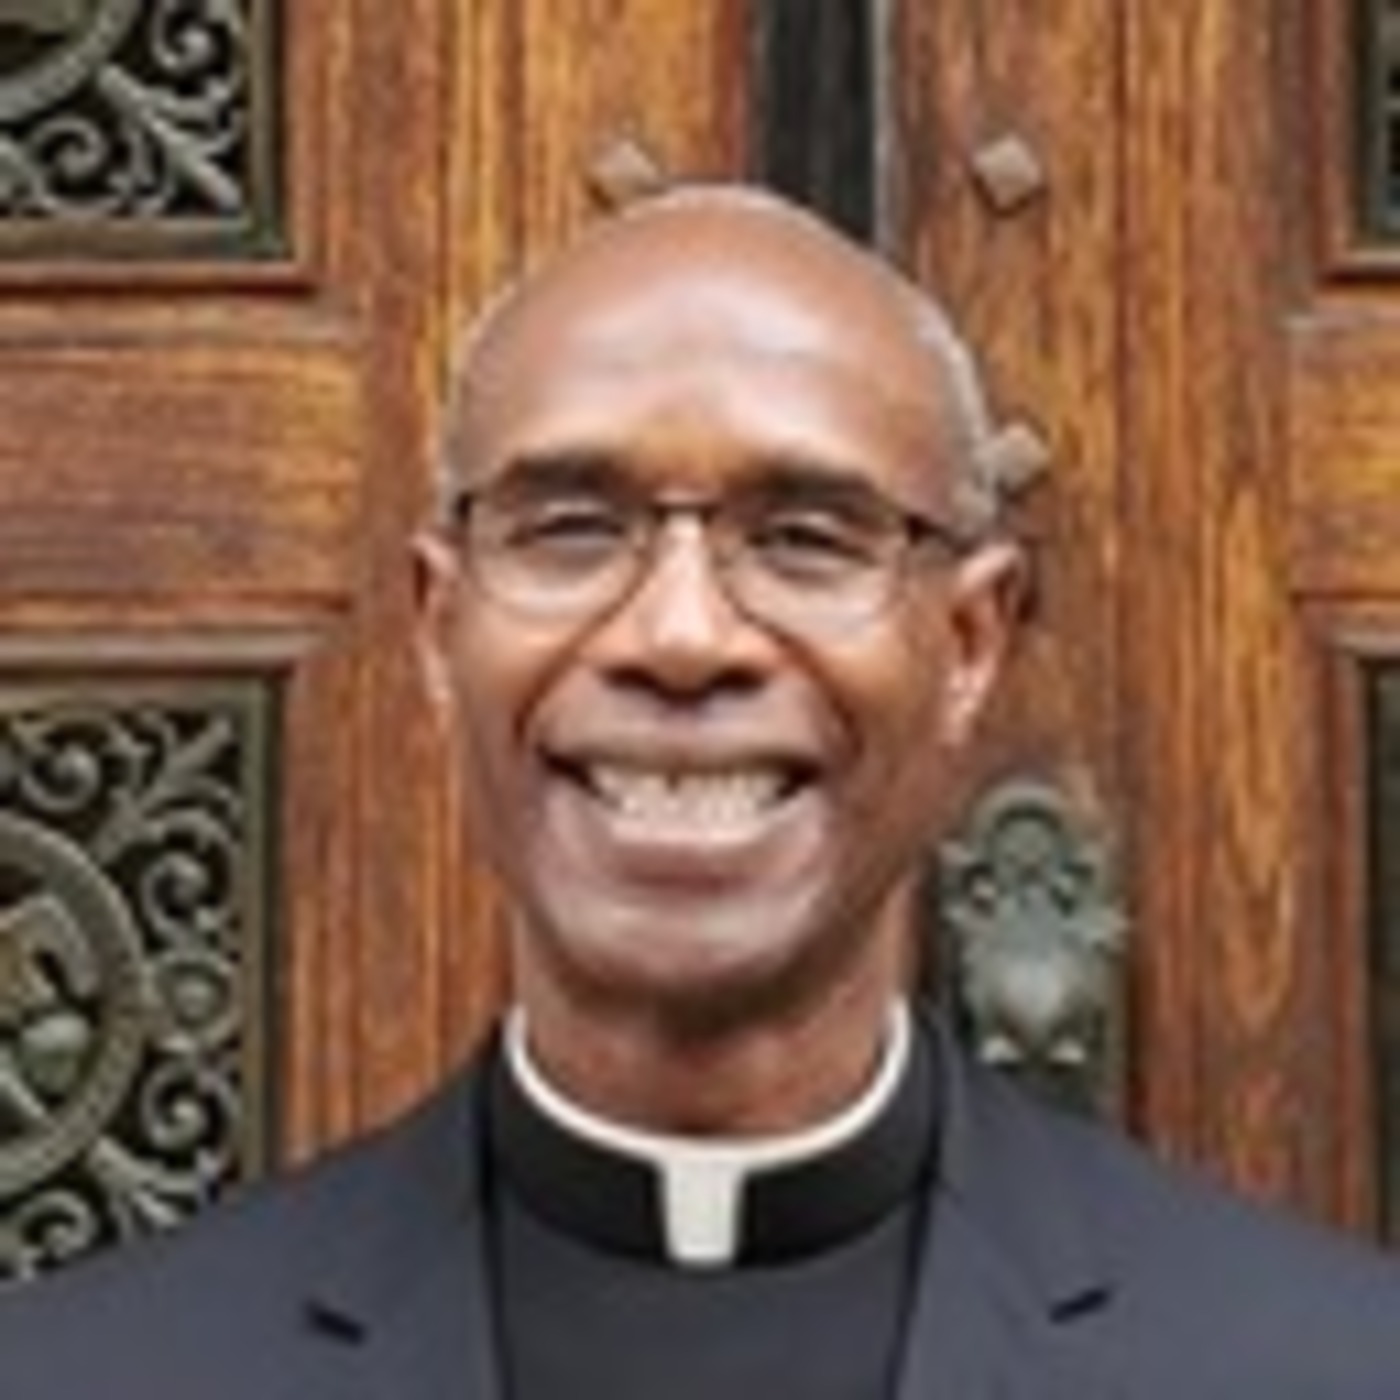 Fr. Bryan Patterson